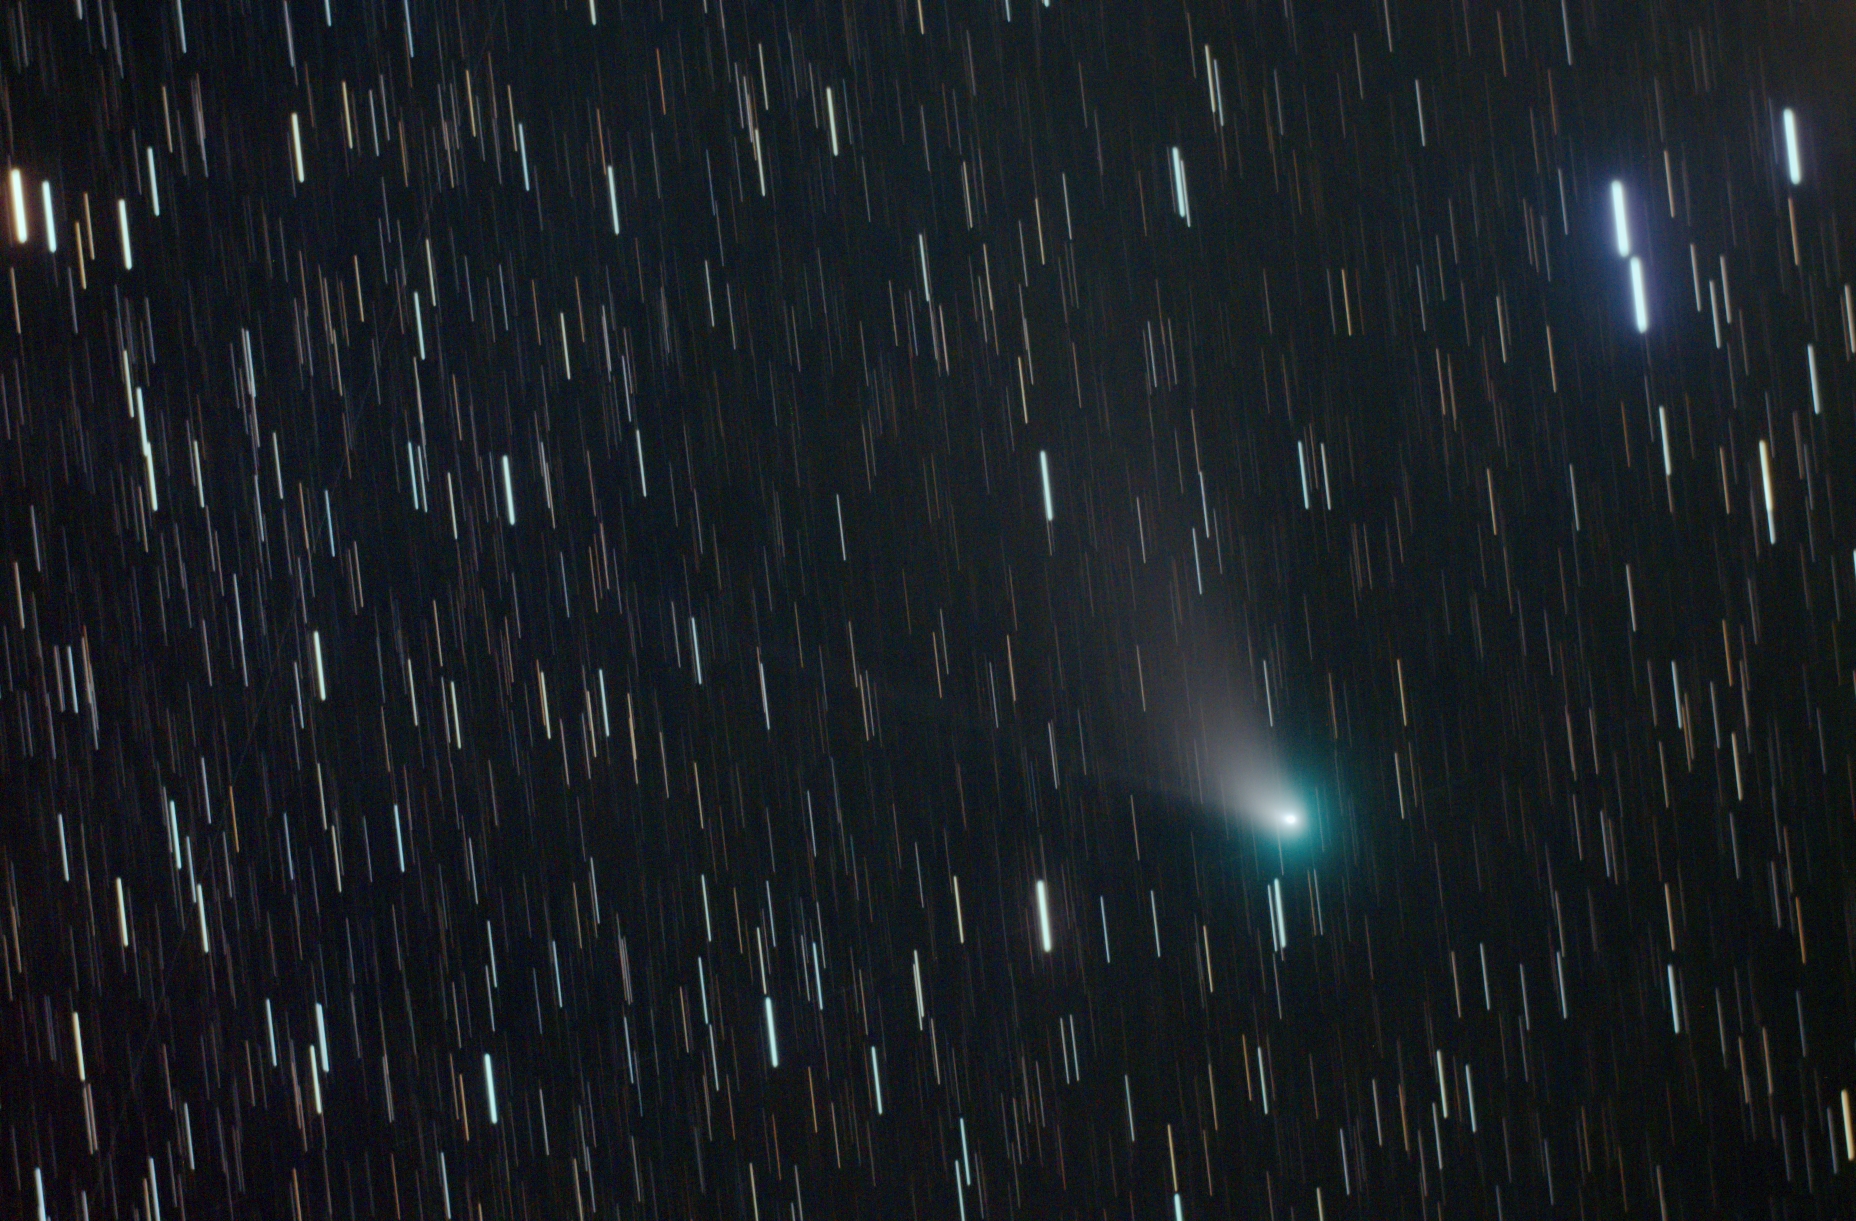 Kometa C/2022 E3 (ZTF)